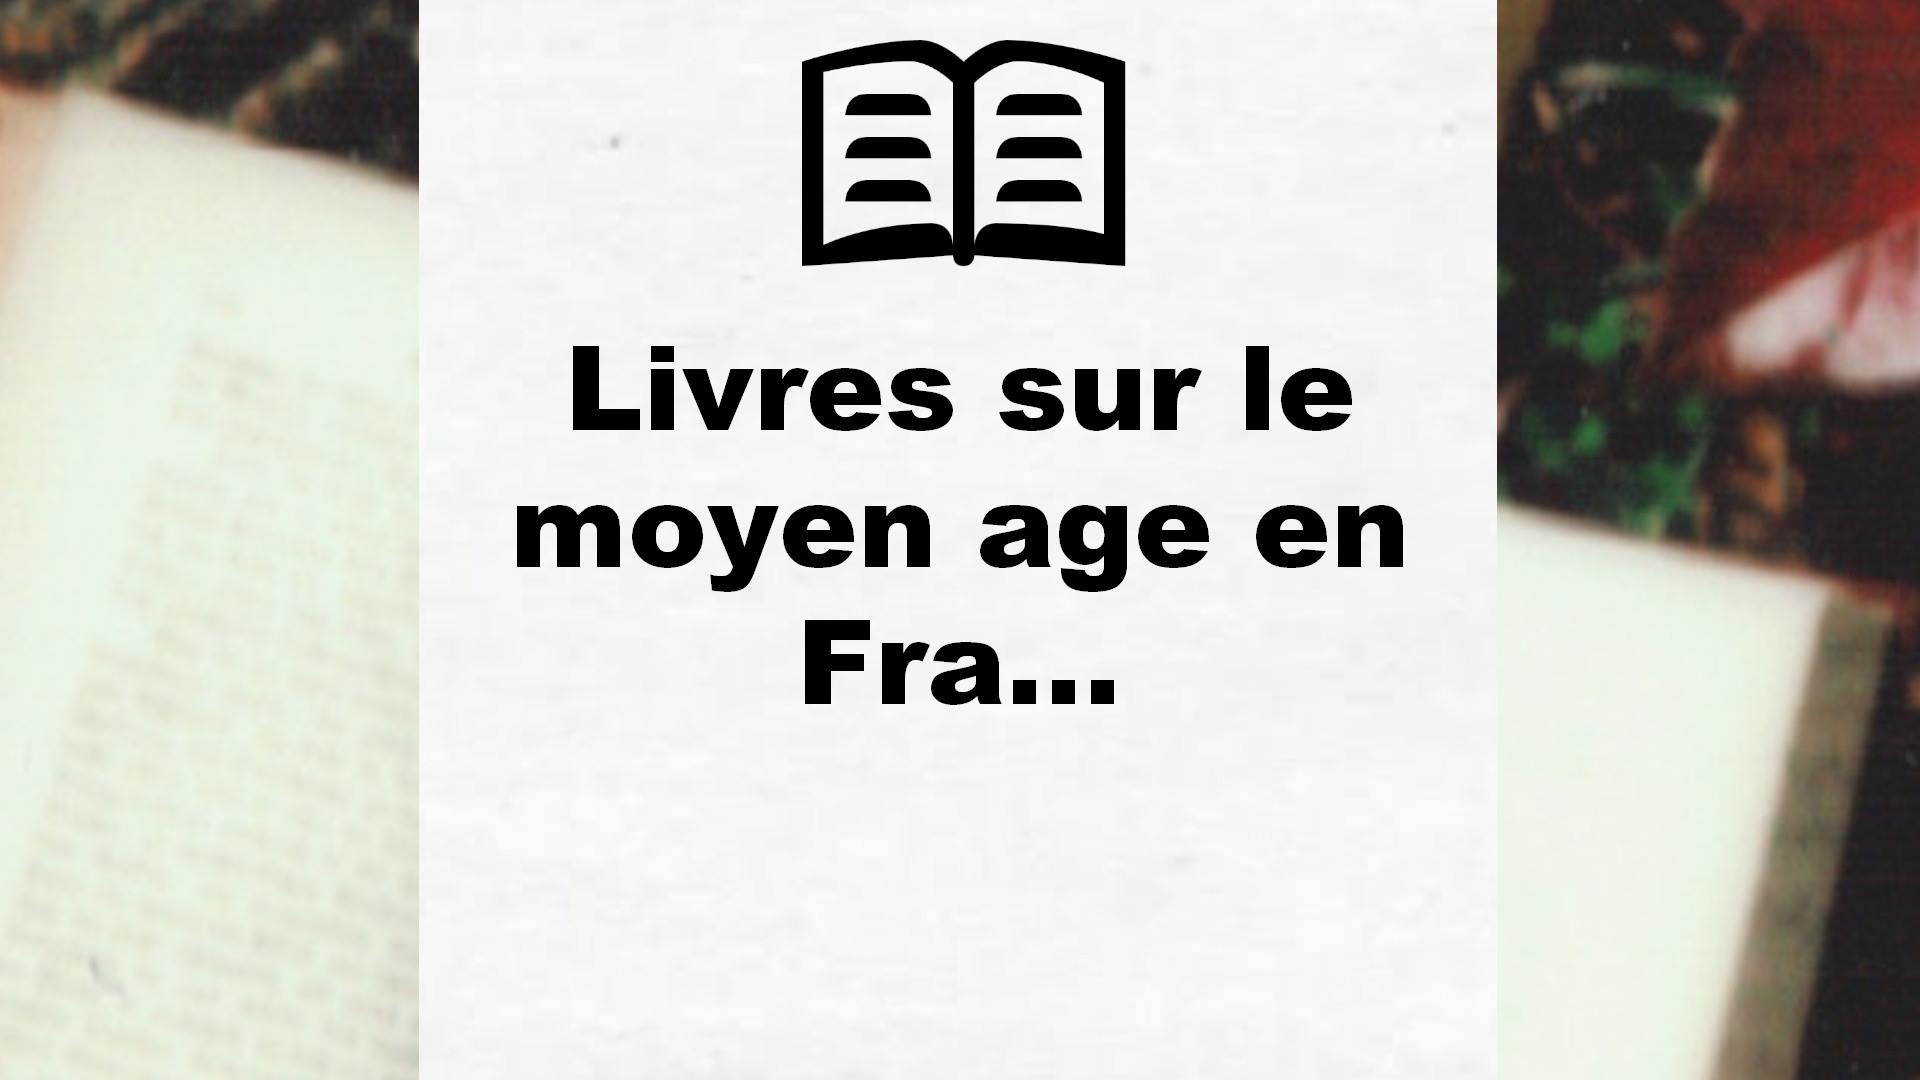 Livres sur le moyen age en France